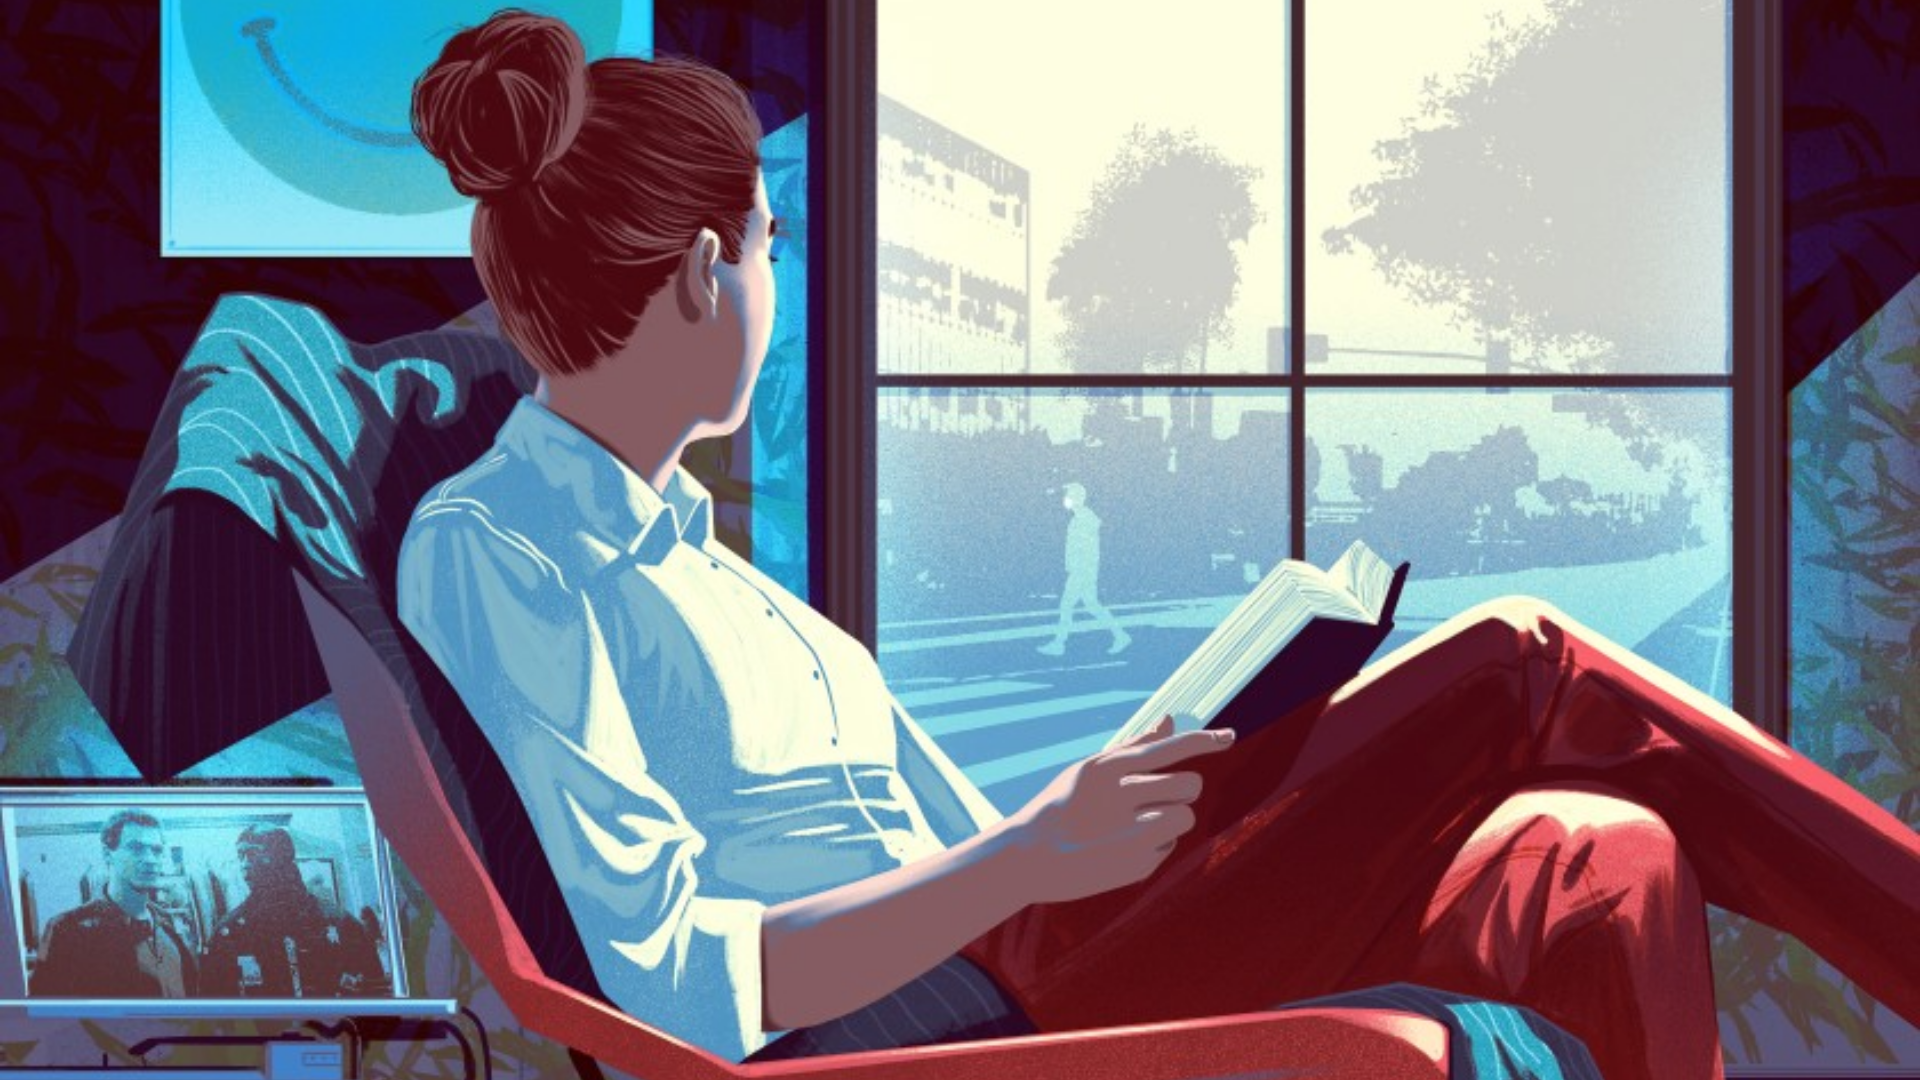 Evde kitap okurken camdan dışarıyı seyreden bir kadın görseli.